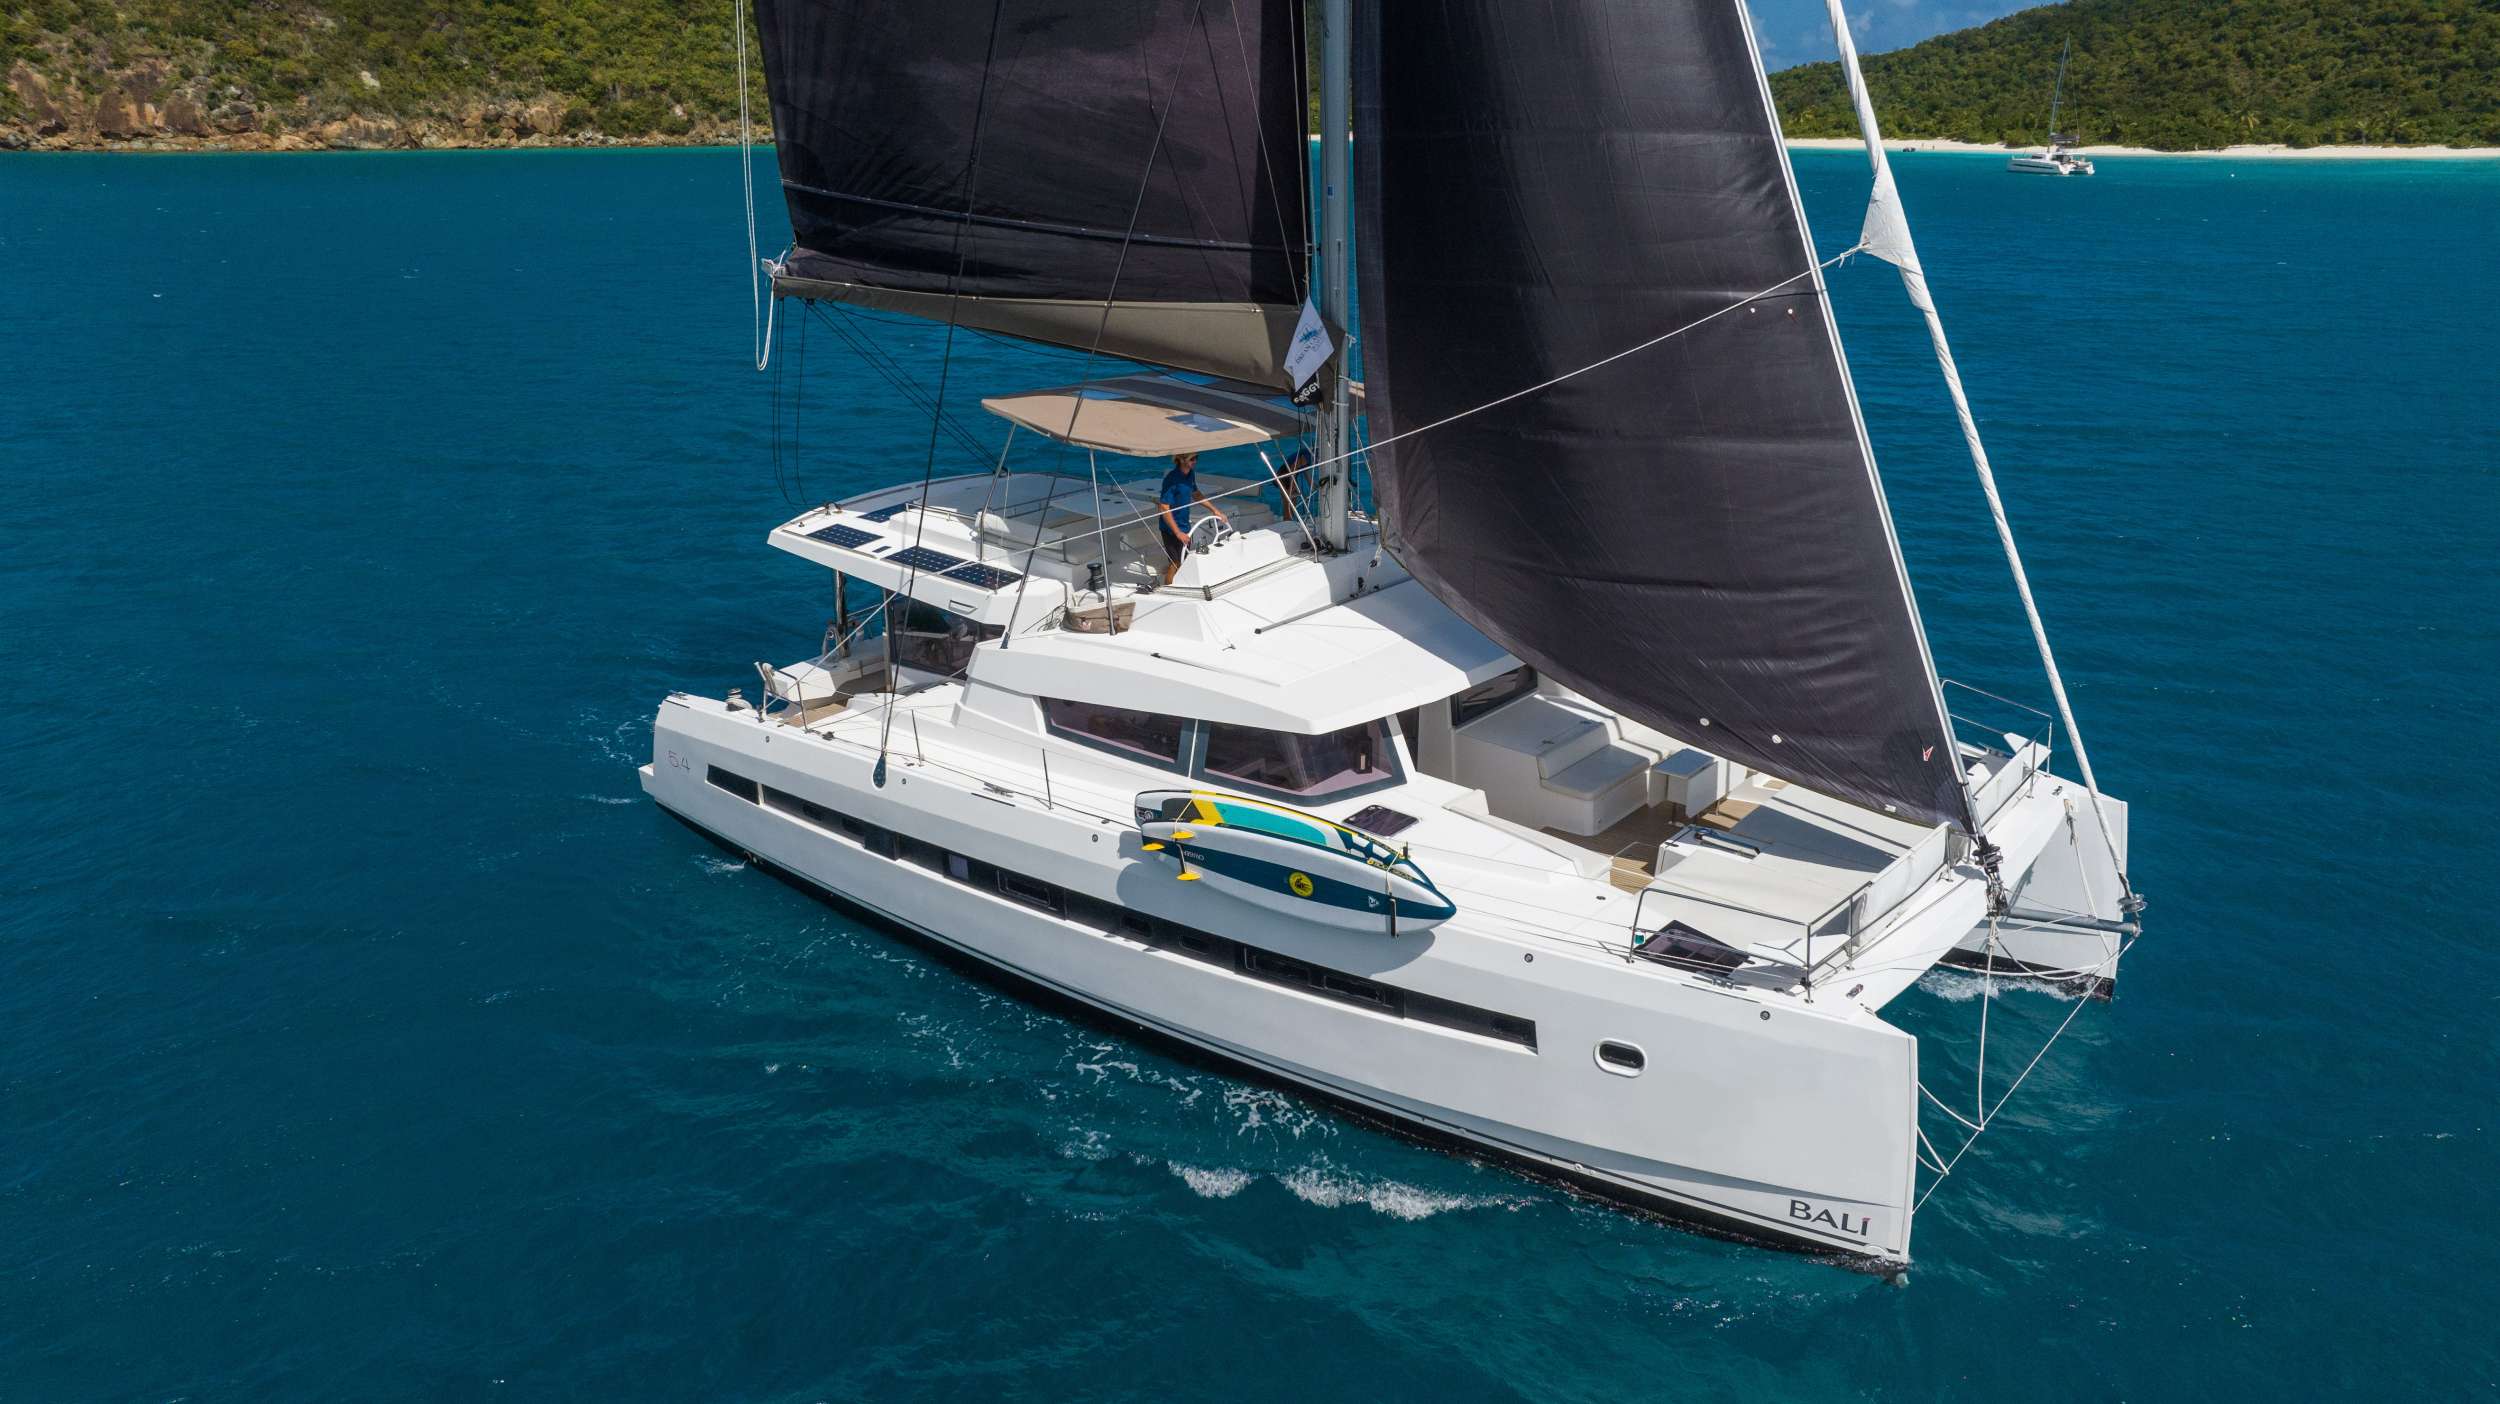 SUN DAZE 5.4 - Yacht Charter Netherlands & Boat hire in Caribbean 1